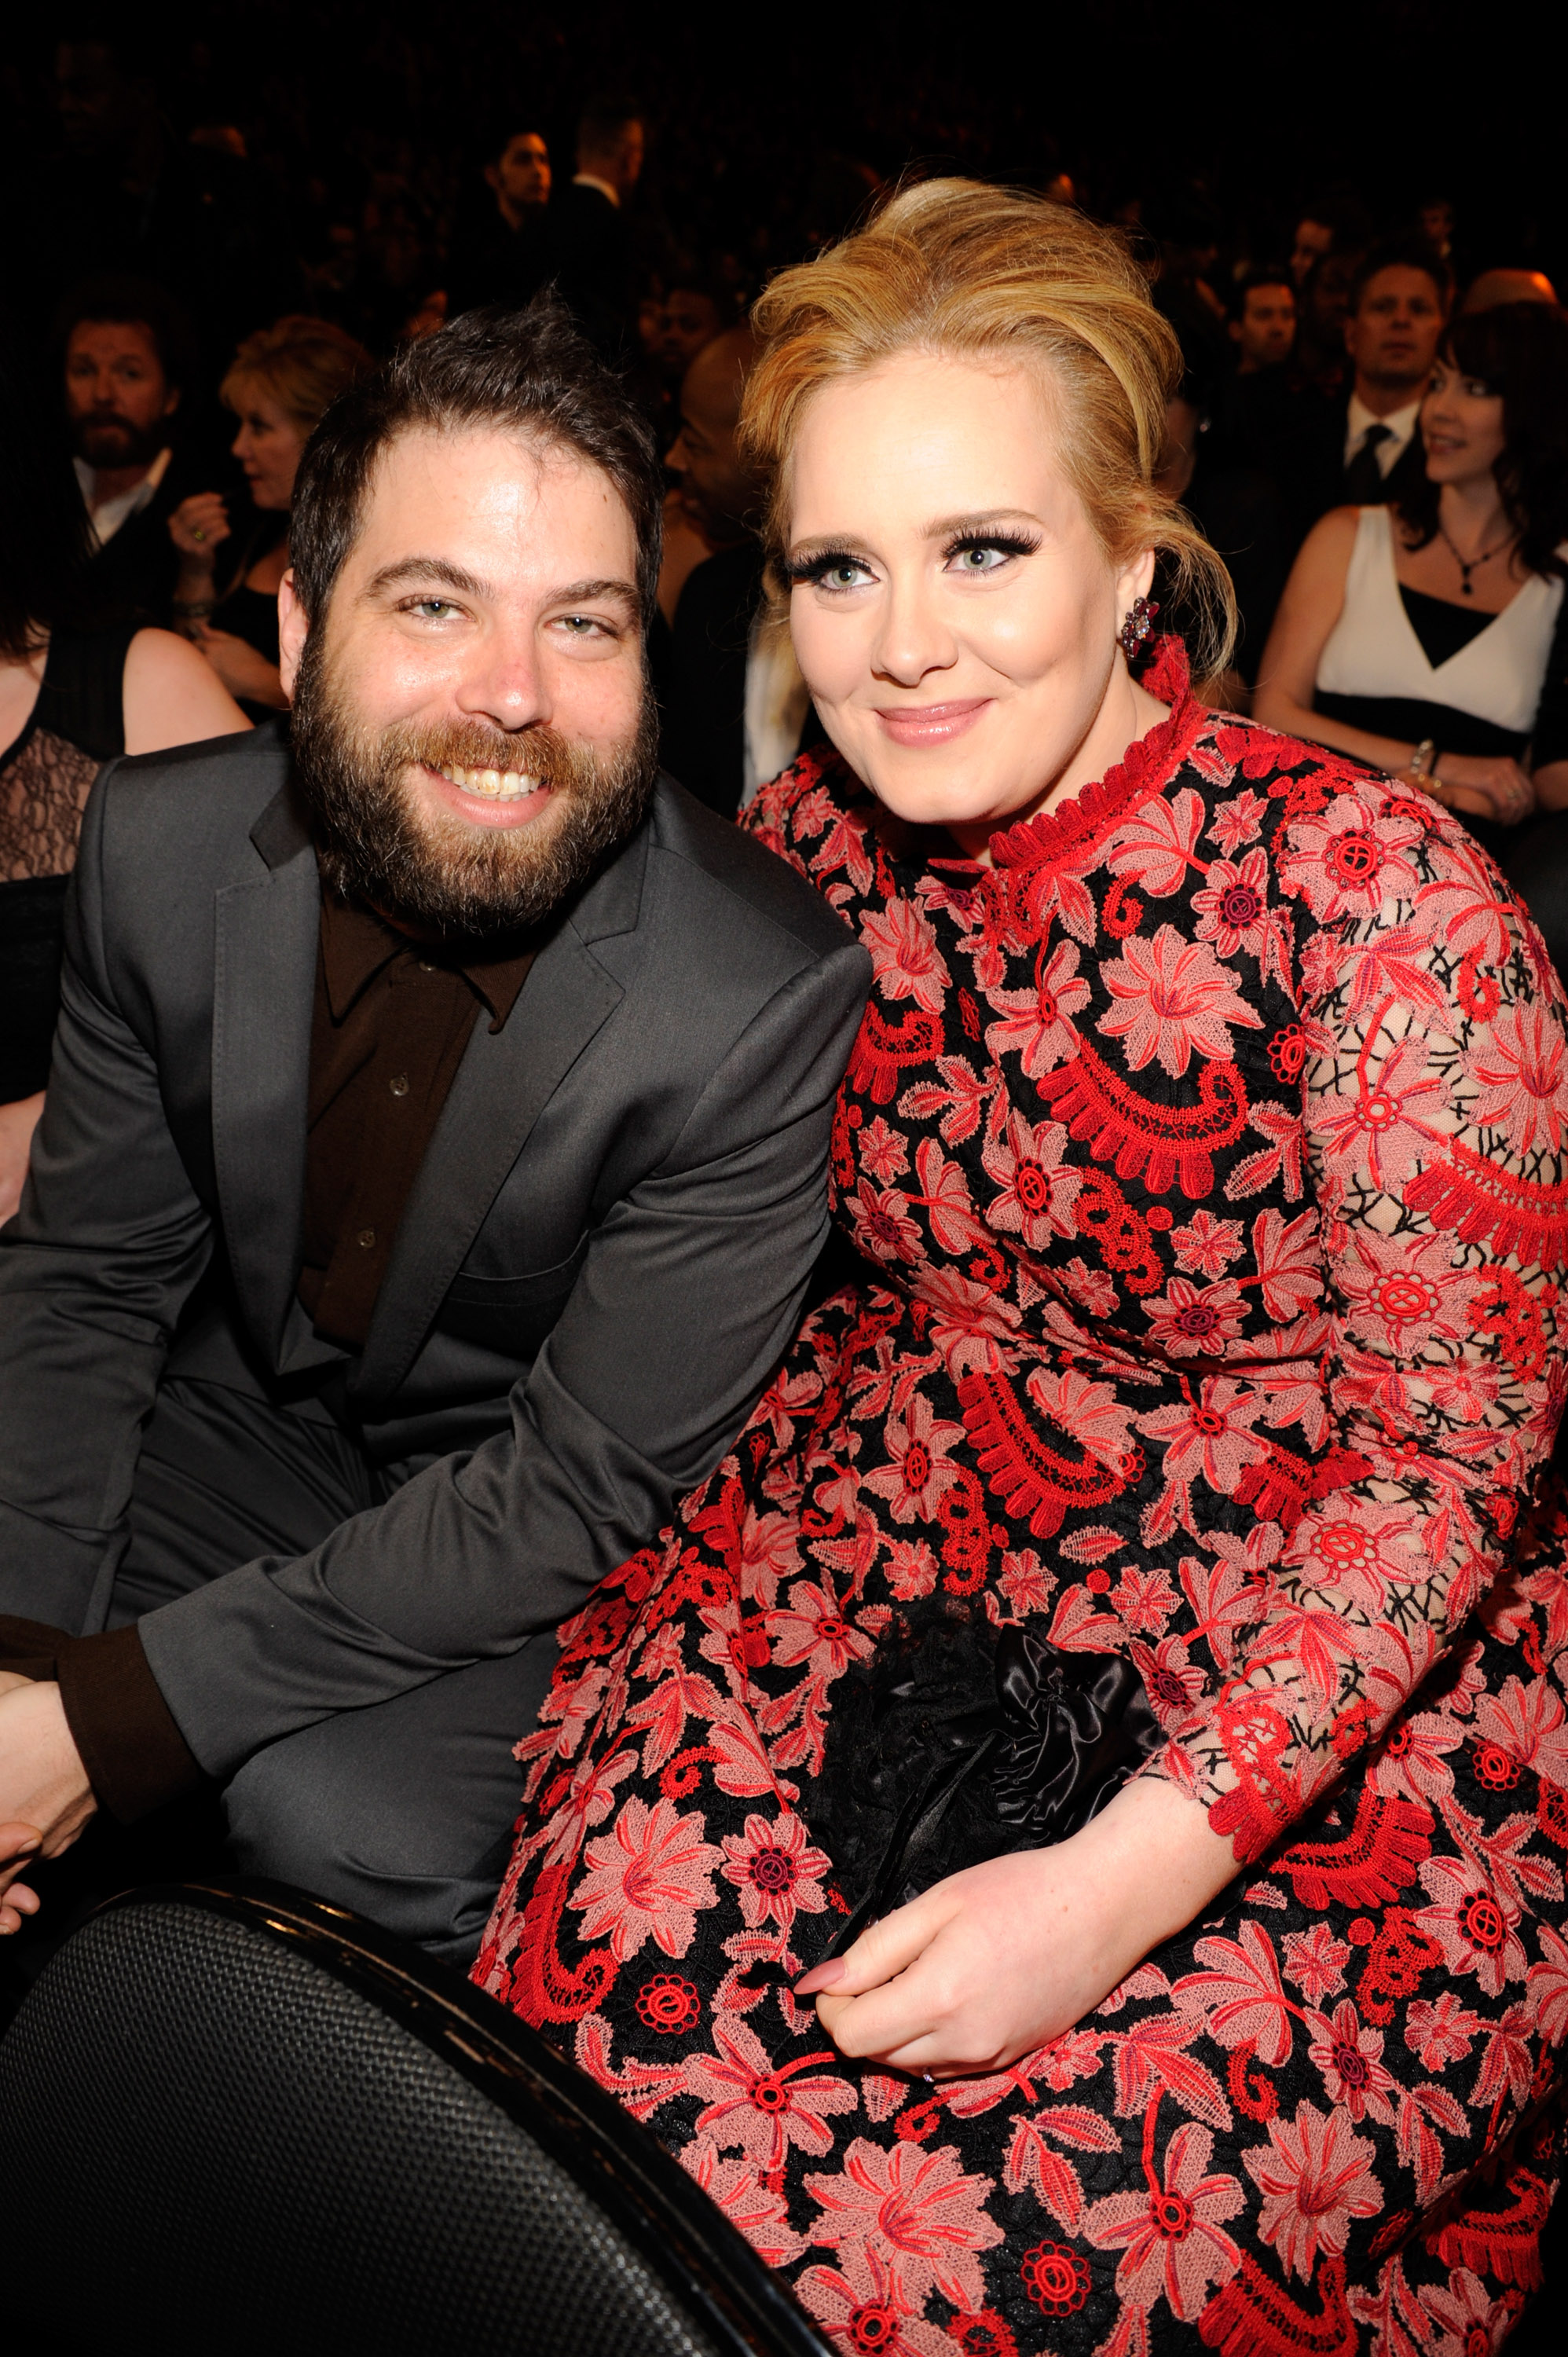 Adele was married to entrepreneur Simon Konecki from 2018 to 2021